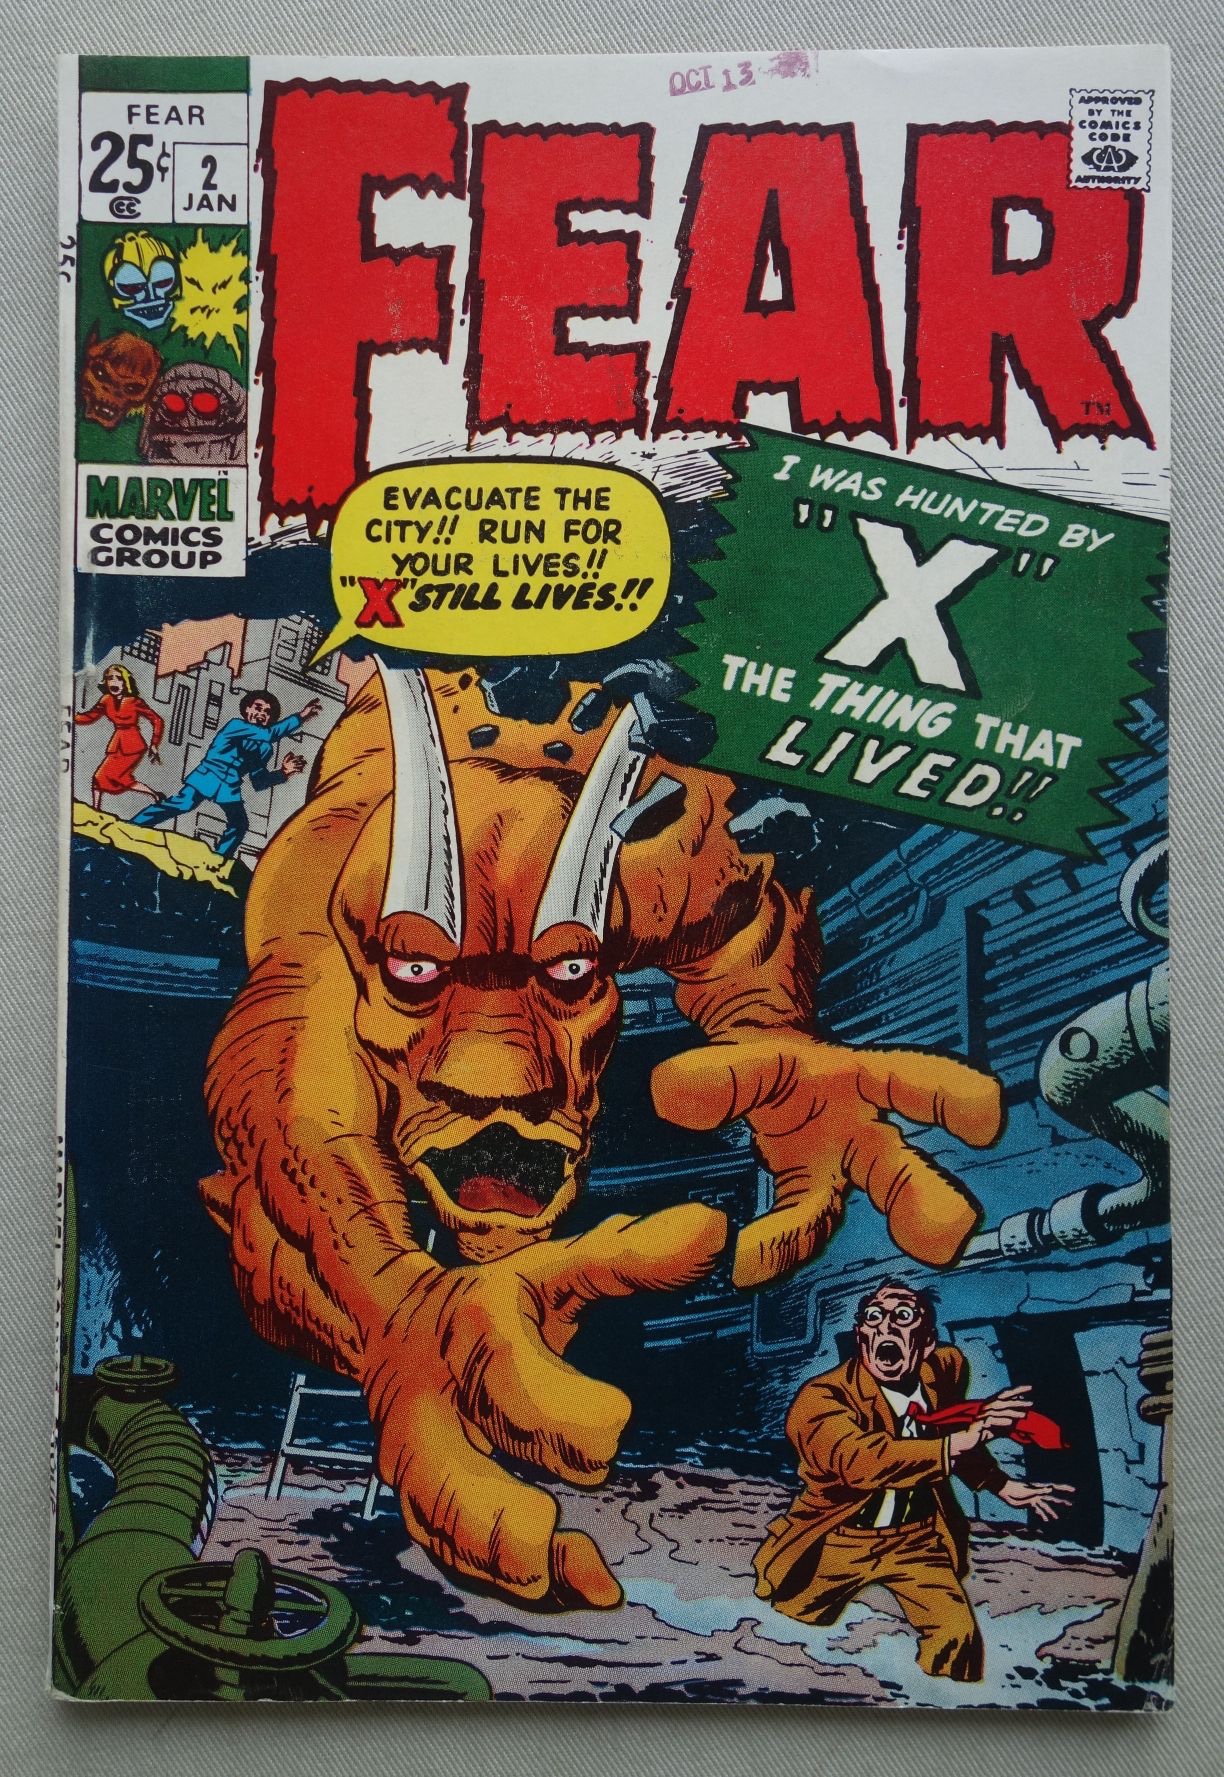 Marvel's Fear #2 - January 1971